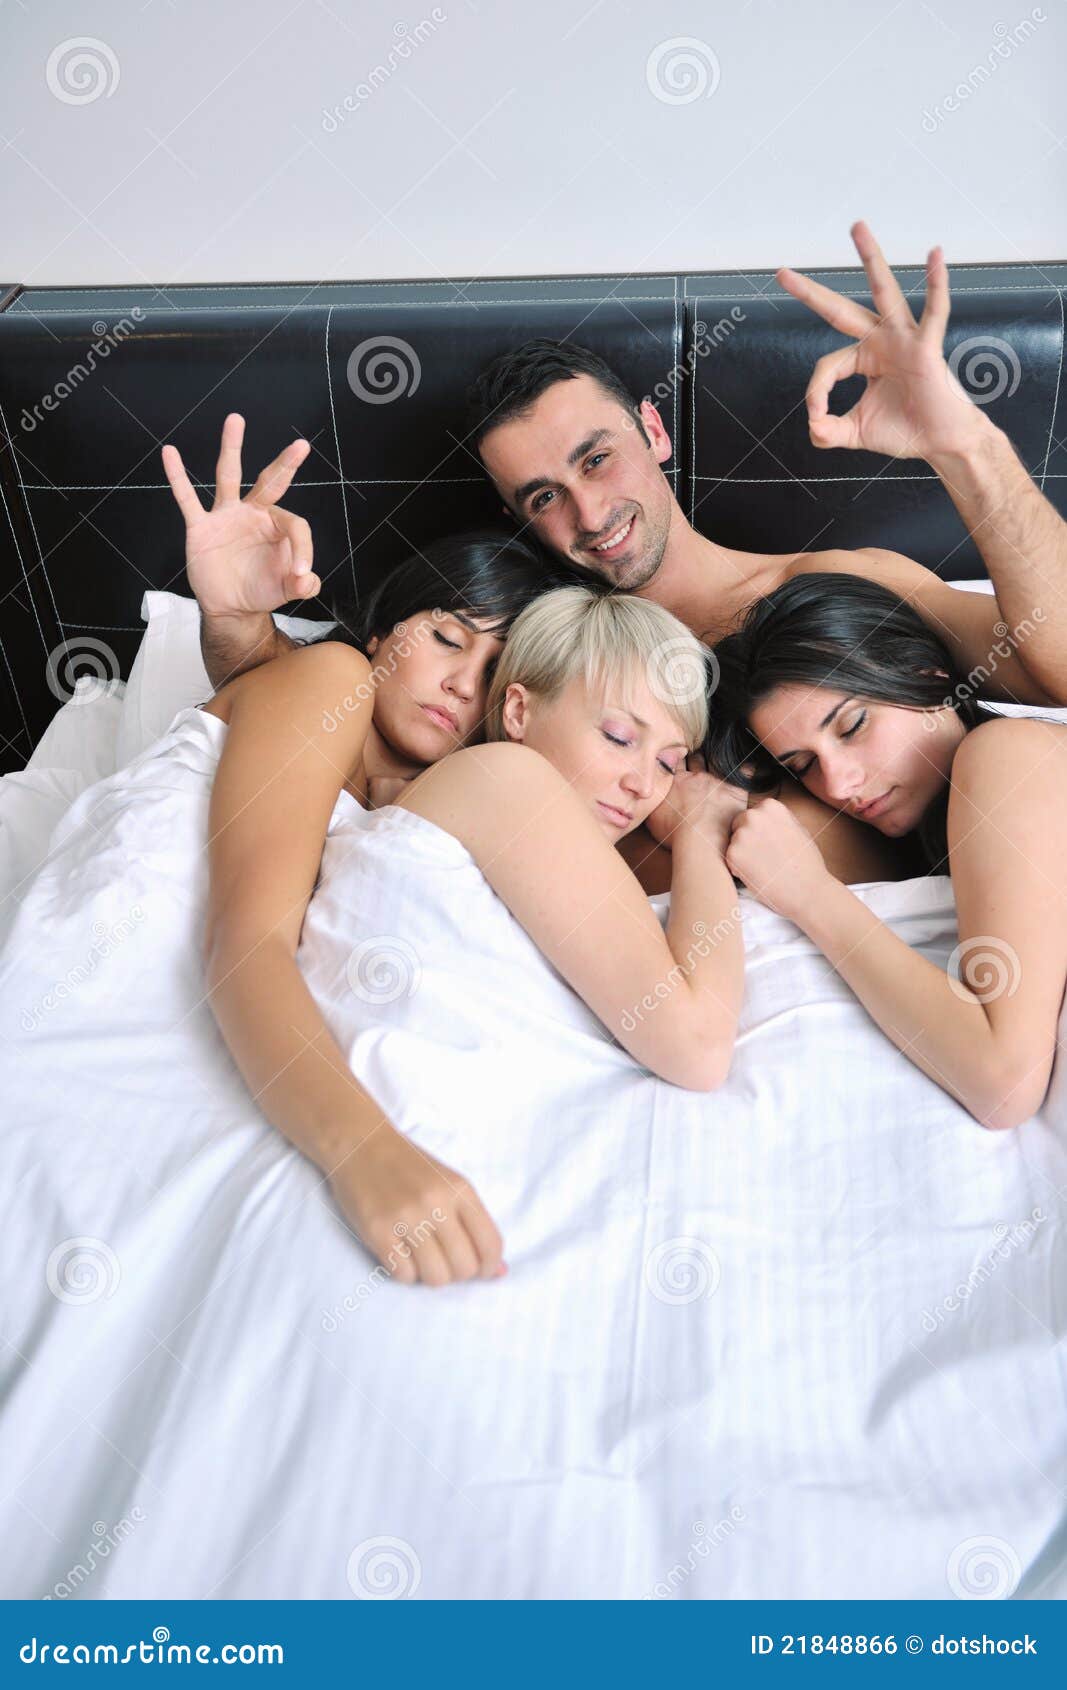 Видео 2 девушки и мужик. Трое людей в постели. Три человека в постели. Две девушки и парень в постели. Девушка и три мужчины в постели.